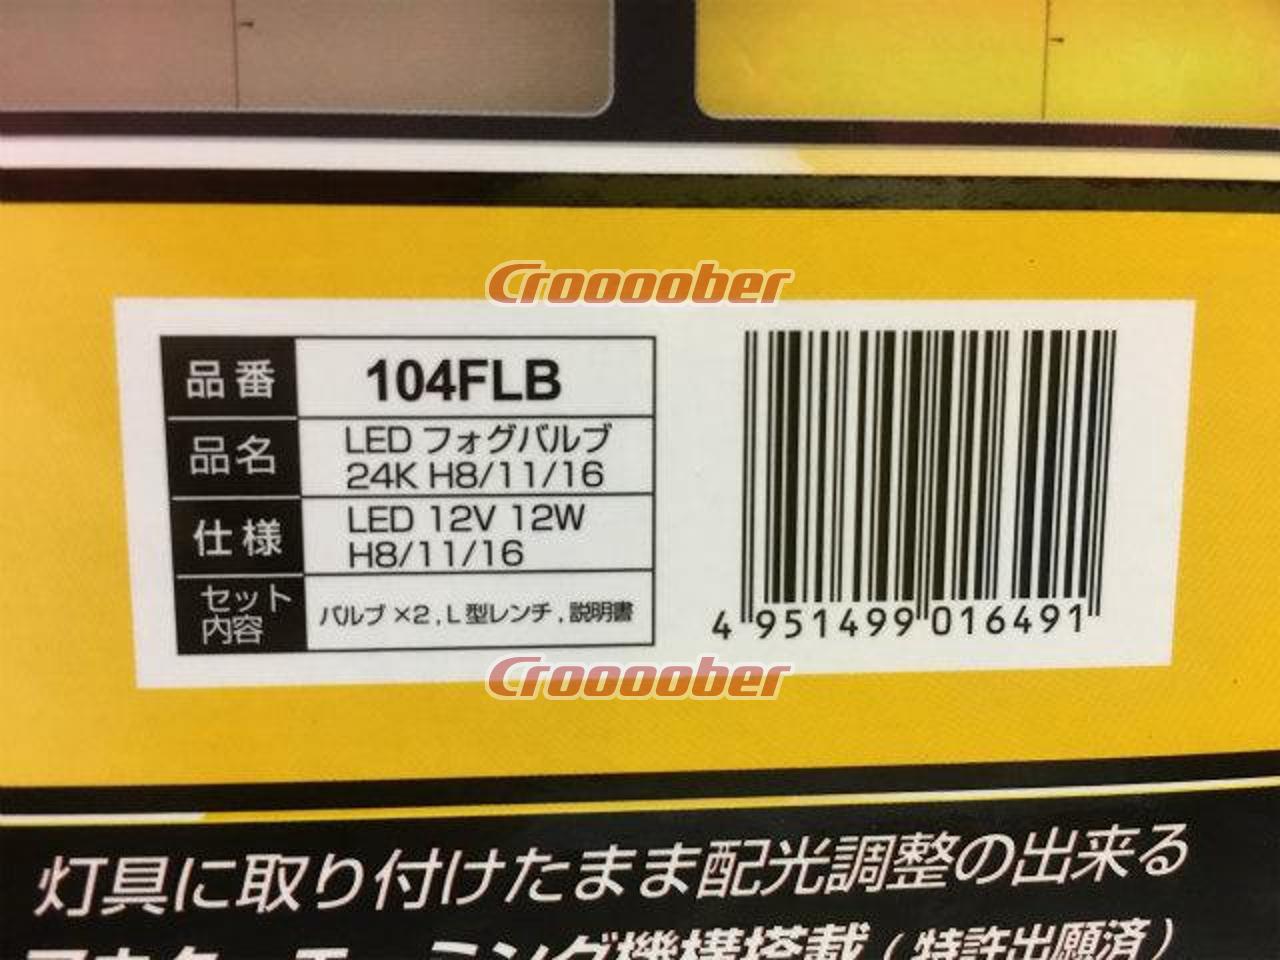 IPF LEDフォグバルブ 【104FLB】 2400K H8/H11/H16 | バルブ・HID LED 